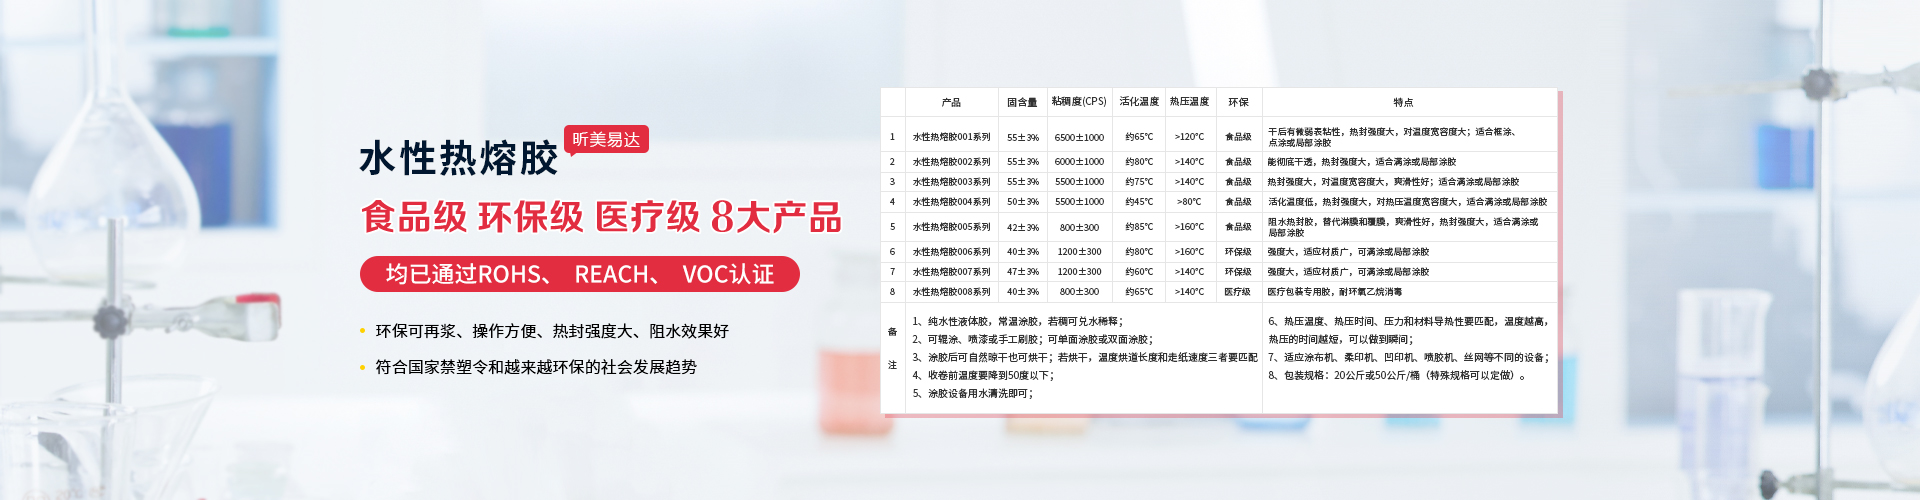 青岛昕美易达专业生产水性胶,胶水等系列产品.